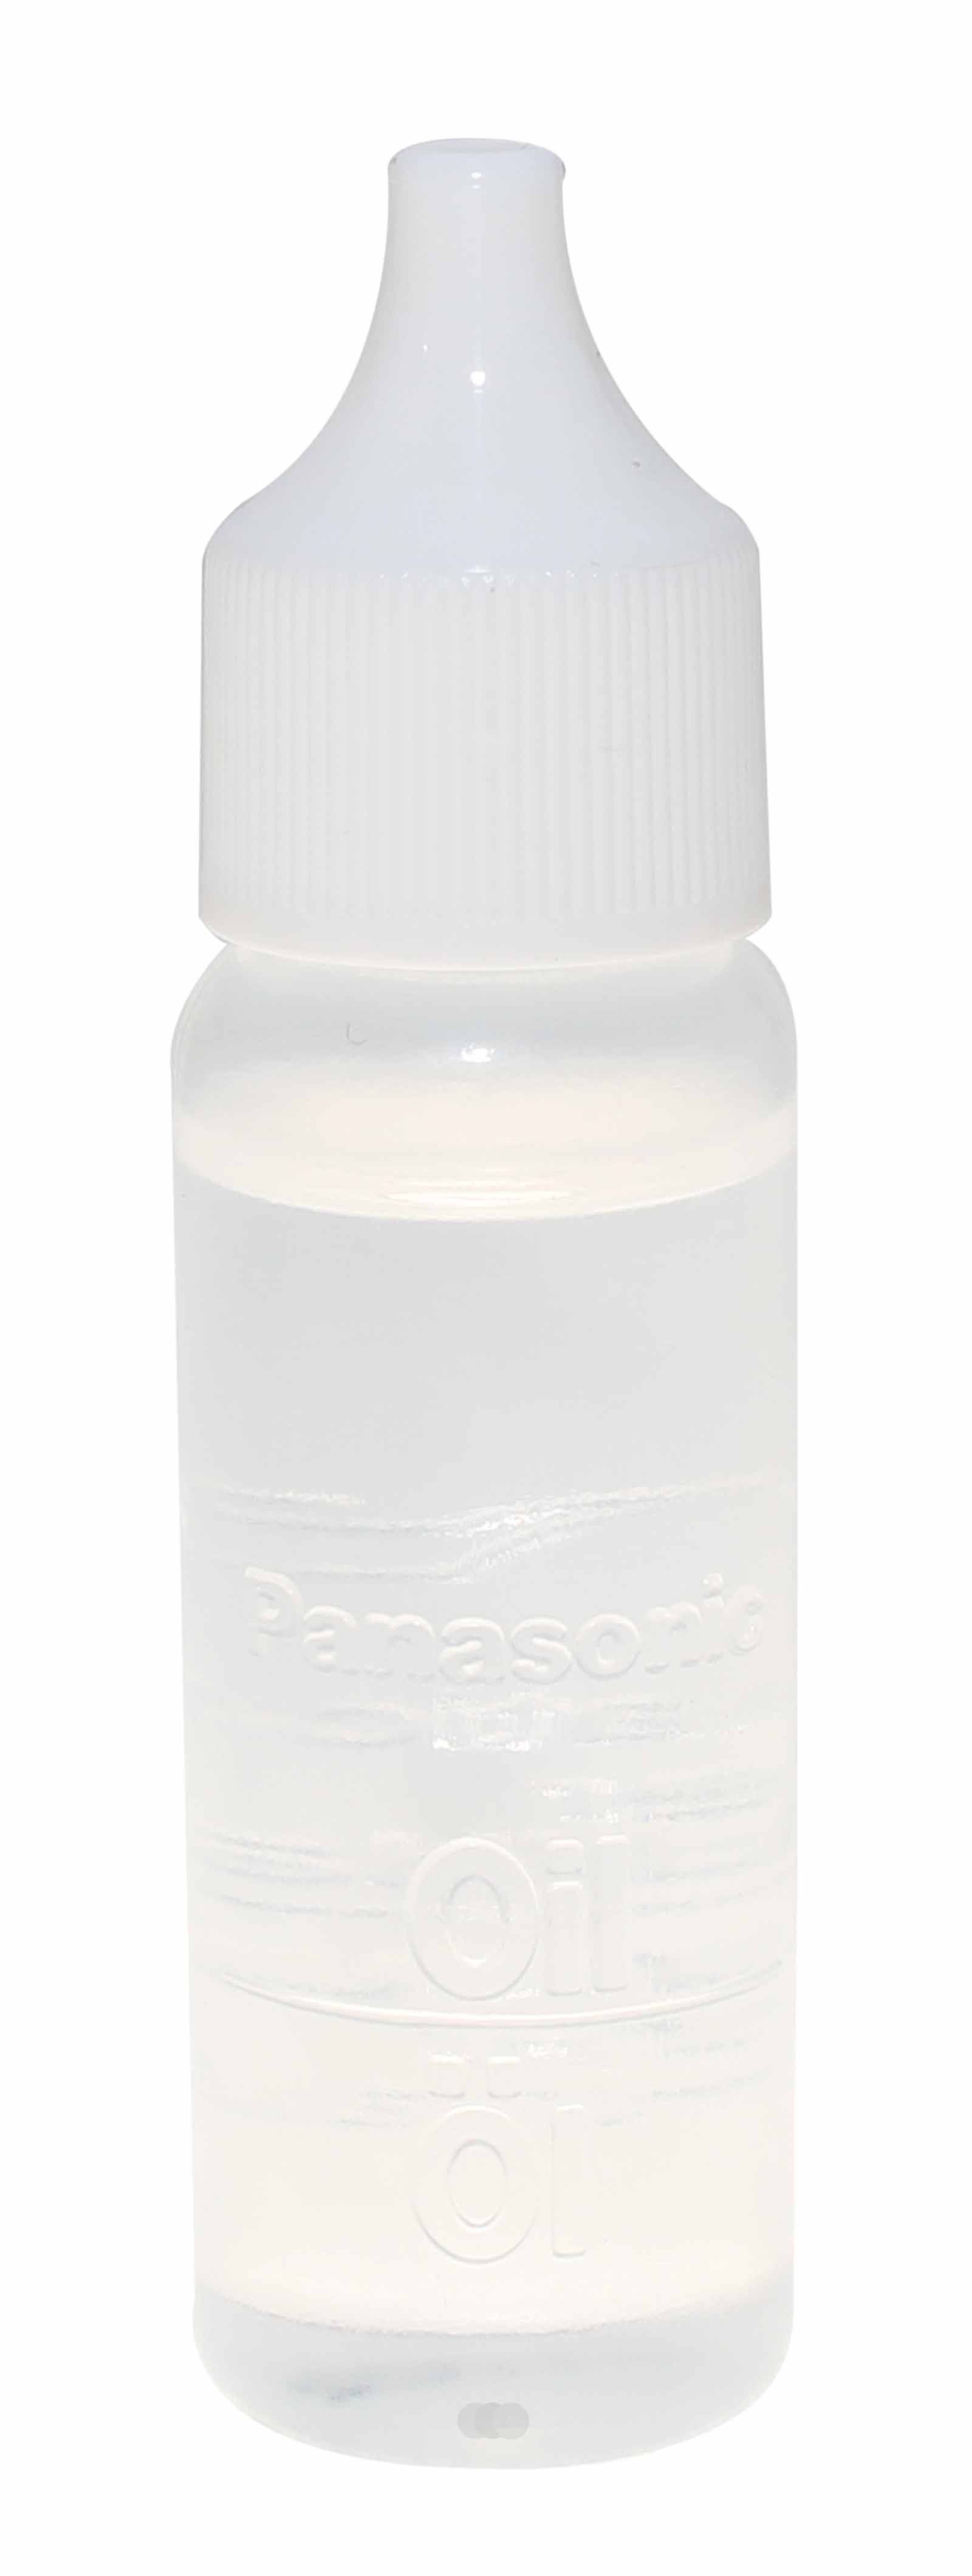 15ml Panasonic WERGC20X7919 Pflege Öl Schmieröl mit Dosierspitze für Schermesser, Rasierer, Bart-, Haarschneider, Trimmer 